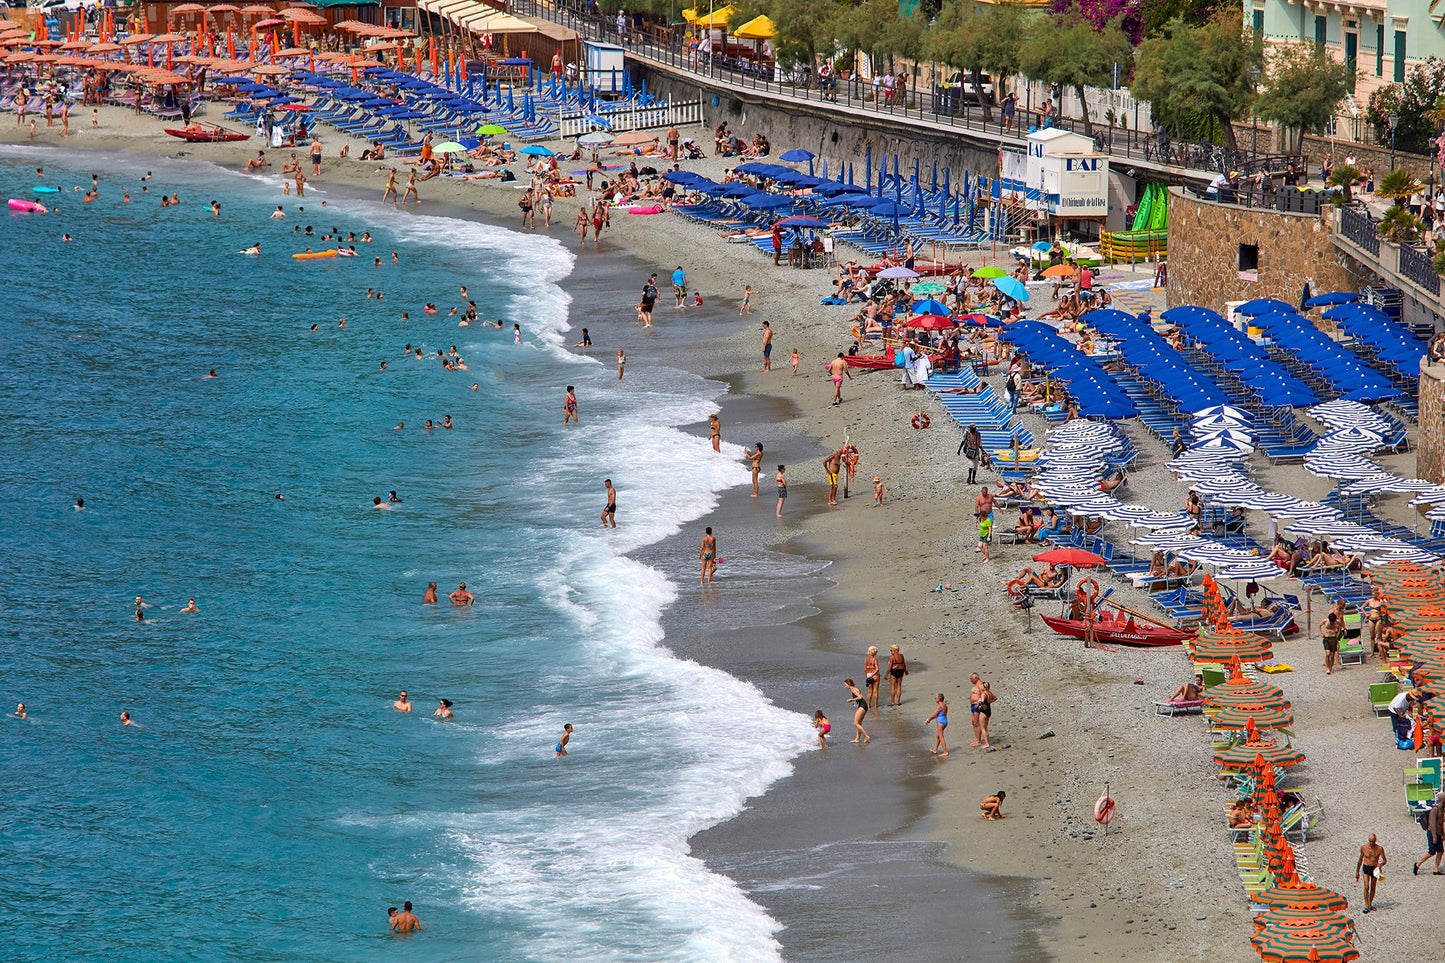 Beach umbrellas 5 - Monerosso, Cinque Terre, Italy